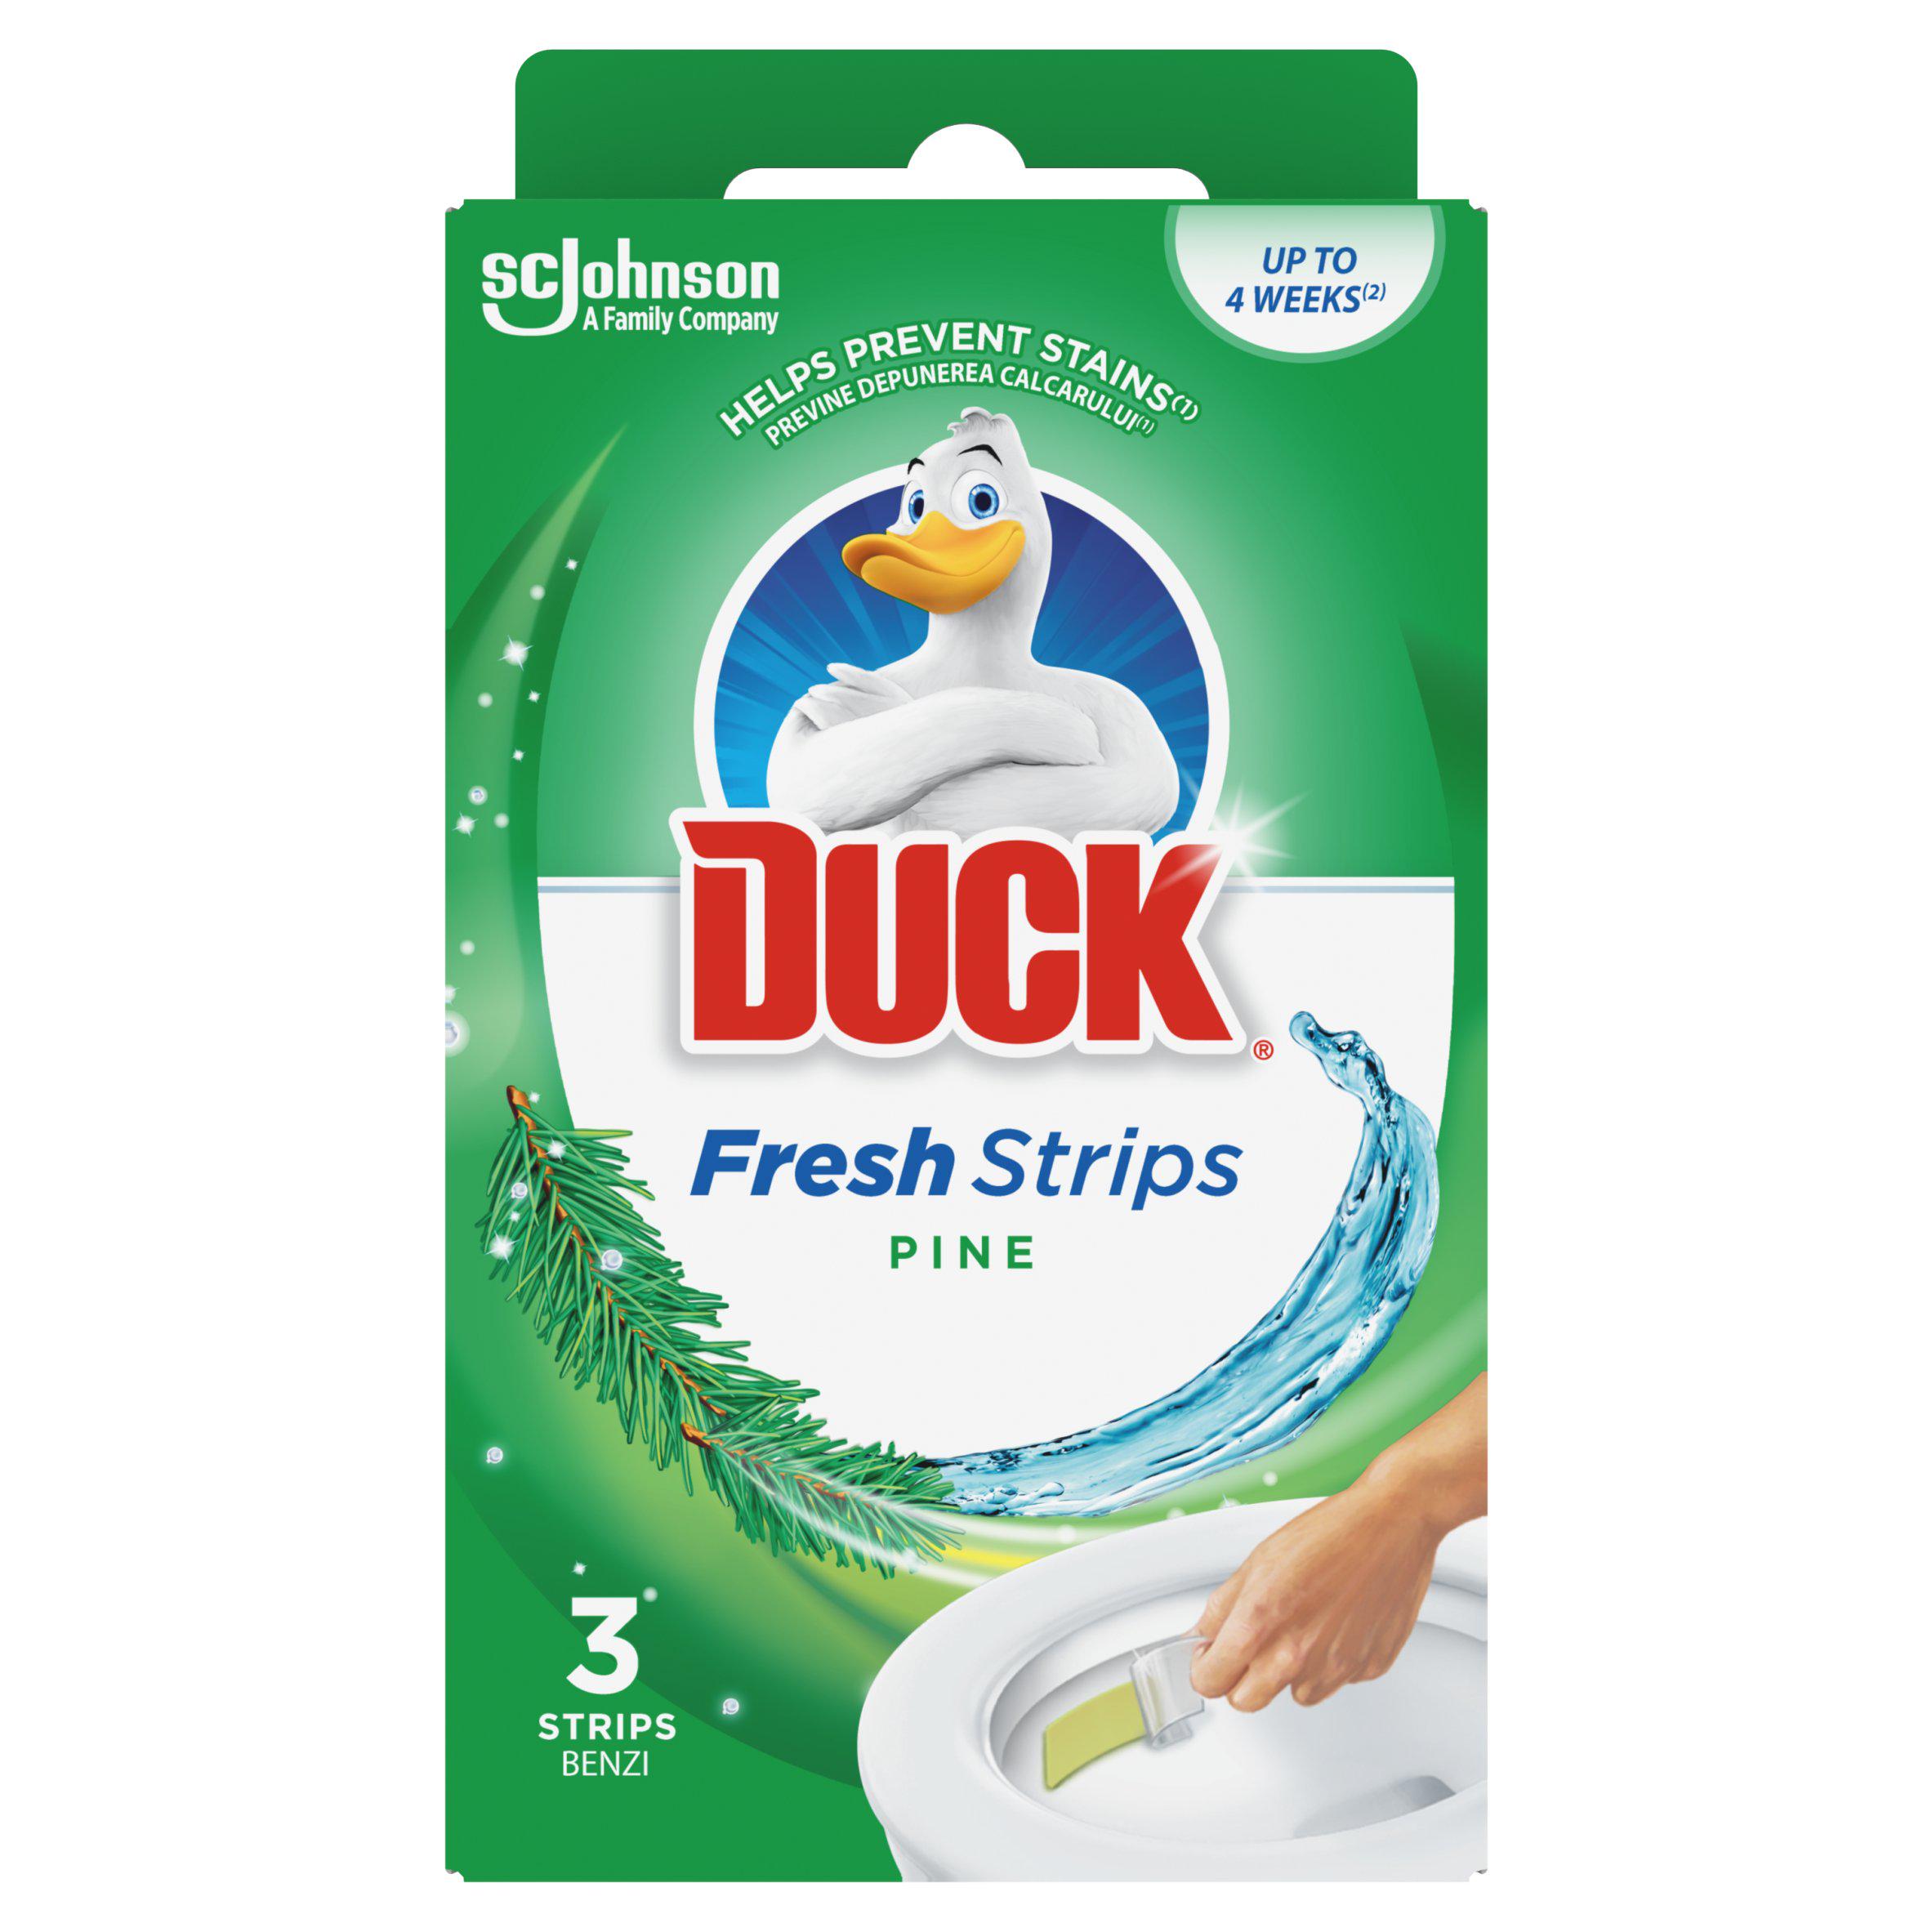 Duck ru. WC Duck. Toilette Duck. Duck Toilet. Fresh strips.